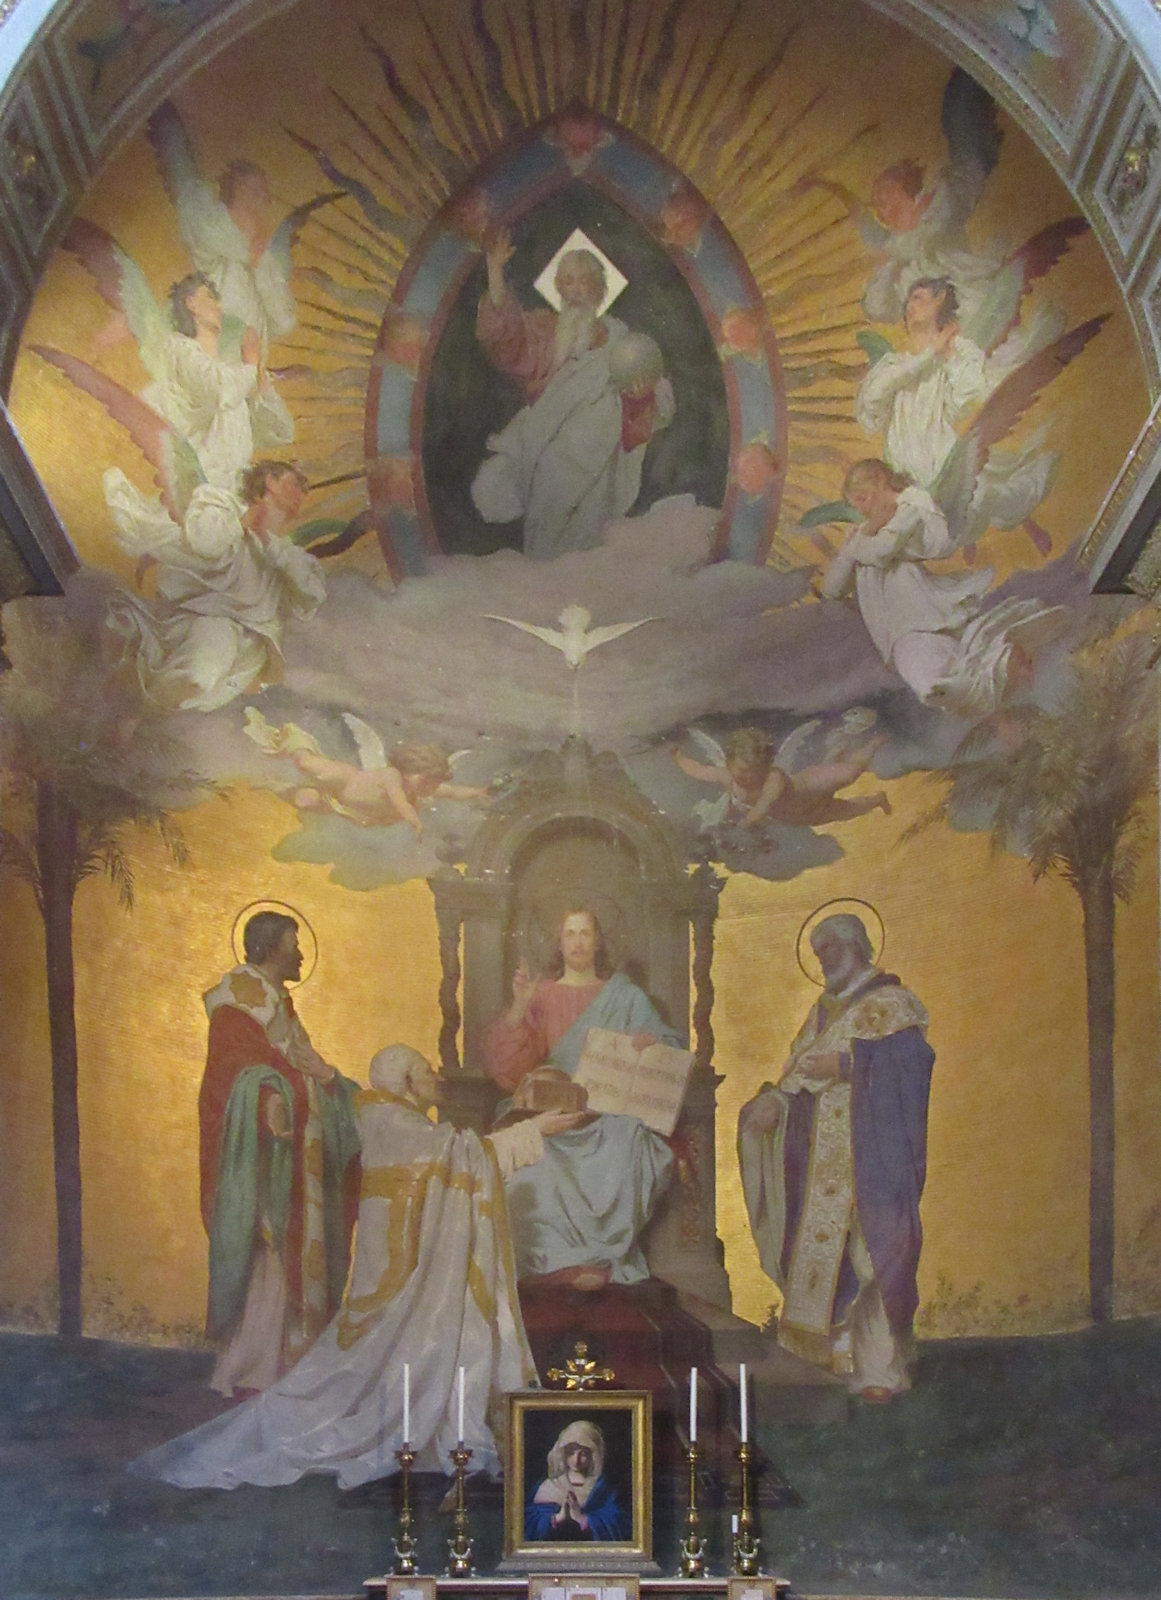 Altarbild: Papst Hadrian II. präsentiert Christus die Reliquien von Clemens I., die Konstantin (rechts) und Method (links) ihm mitgebracht haben, in der Kirche San Clemente in Rom